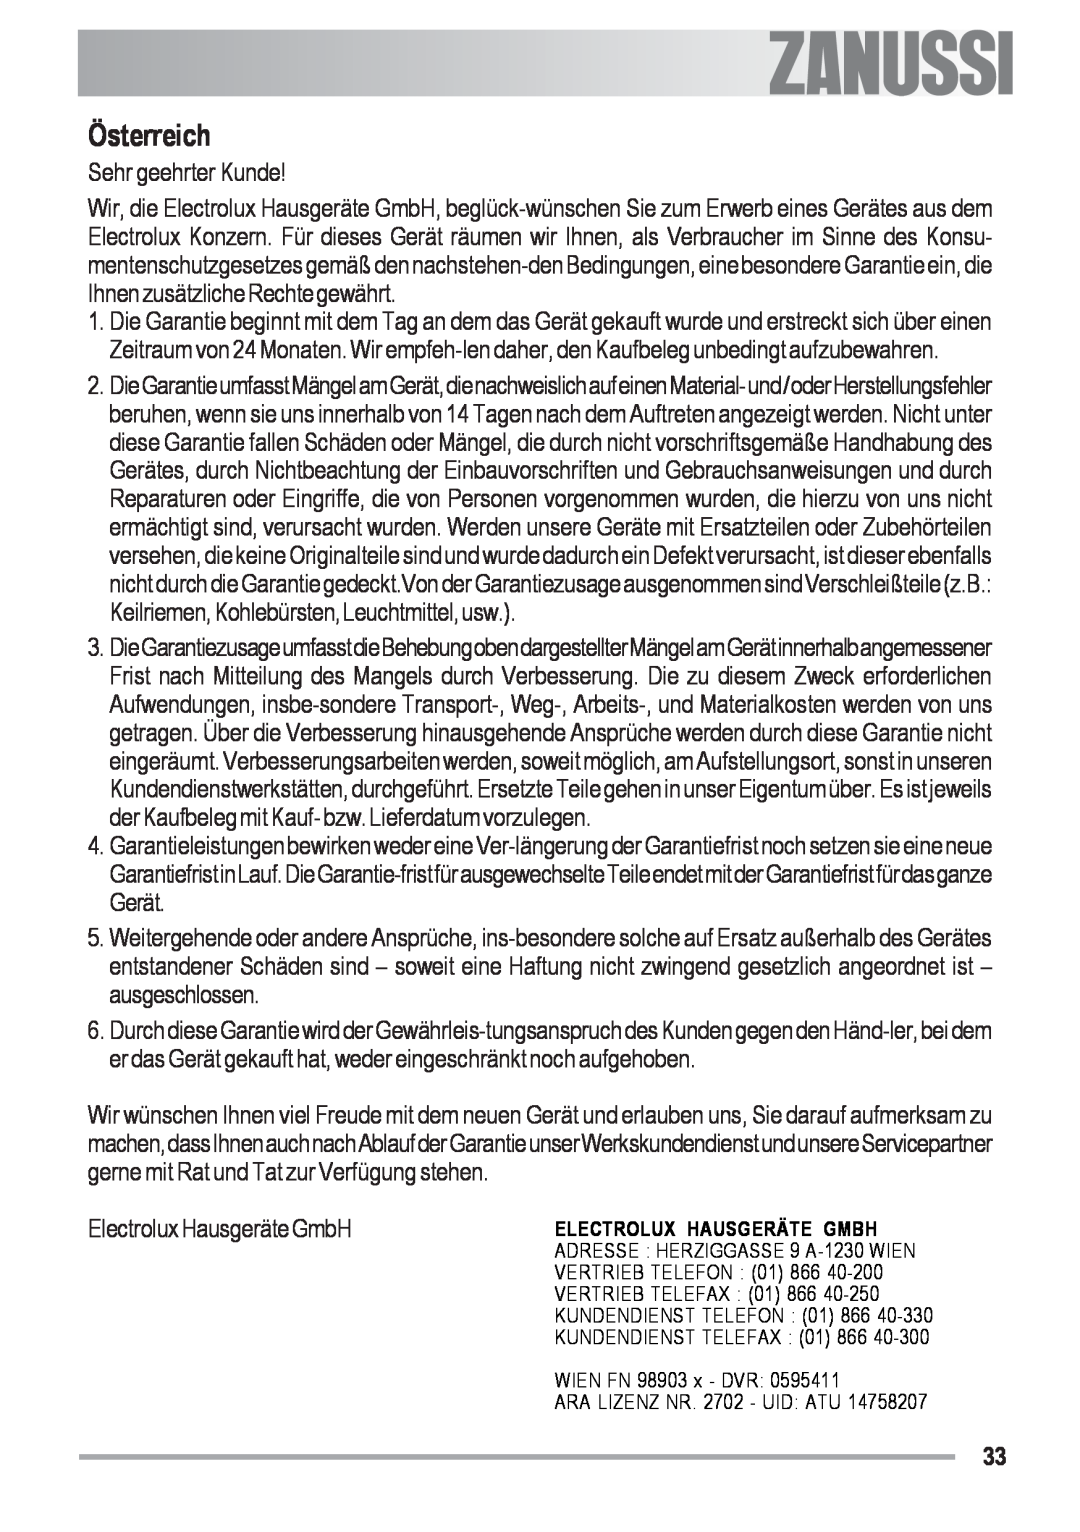 Zanussi ZOB 590 manual Österreich, Sehr geehrter Kunde, Electrolux Hausgeräte GmbH, Electrolux Hausgeräte Gmbh 